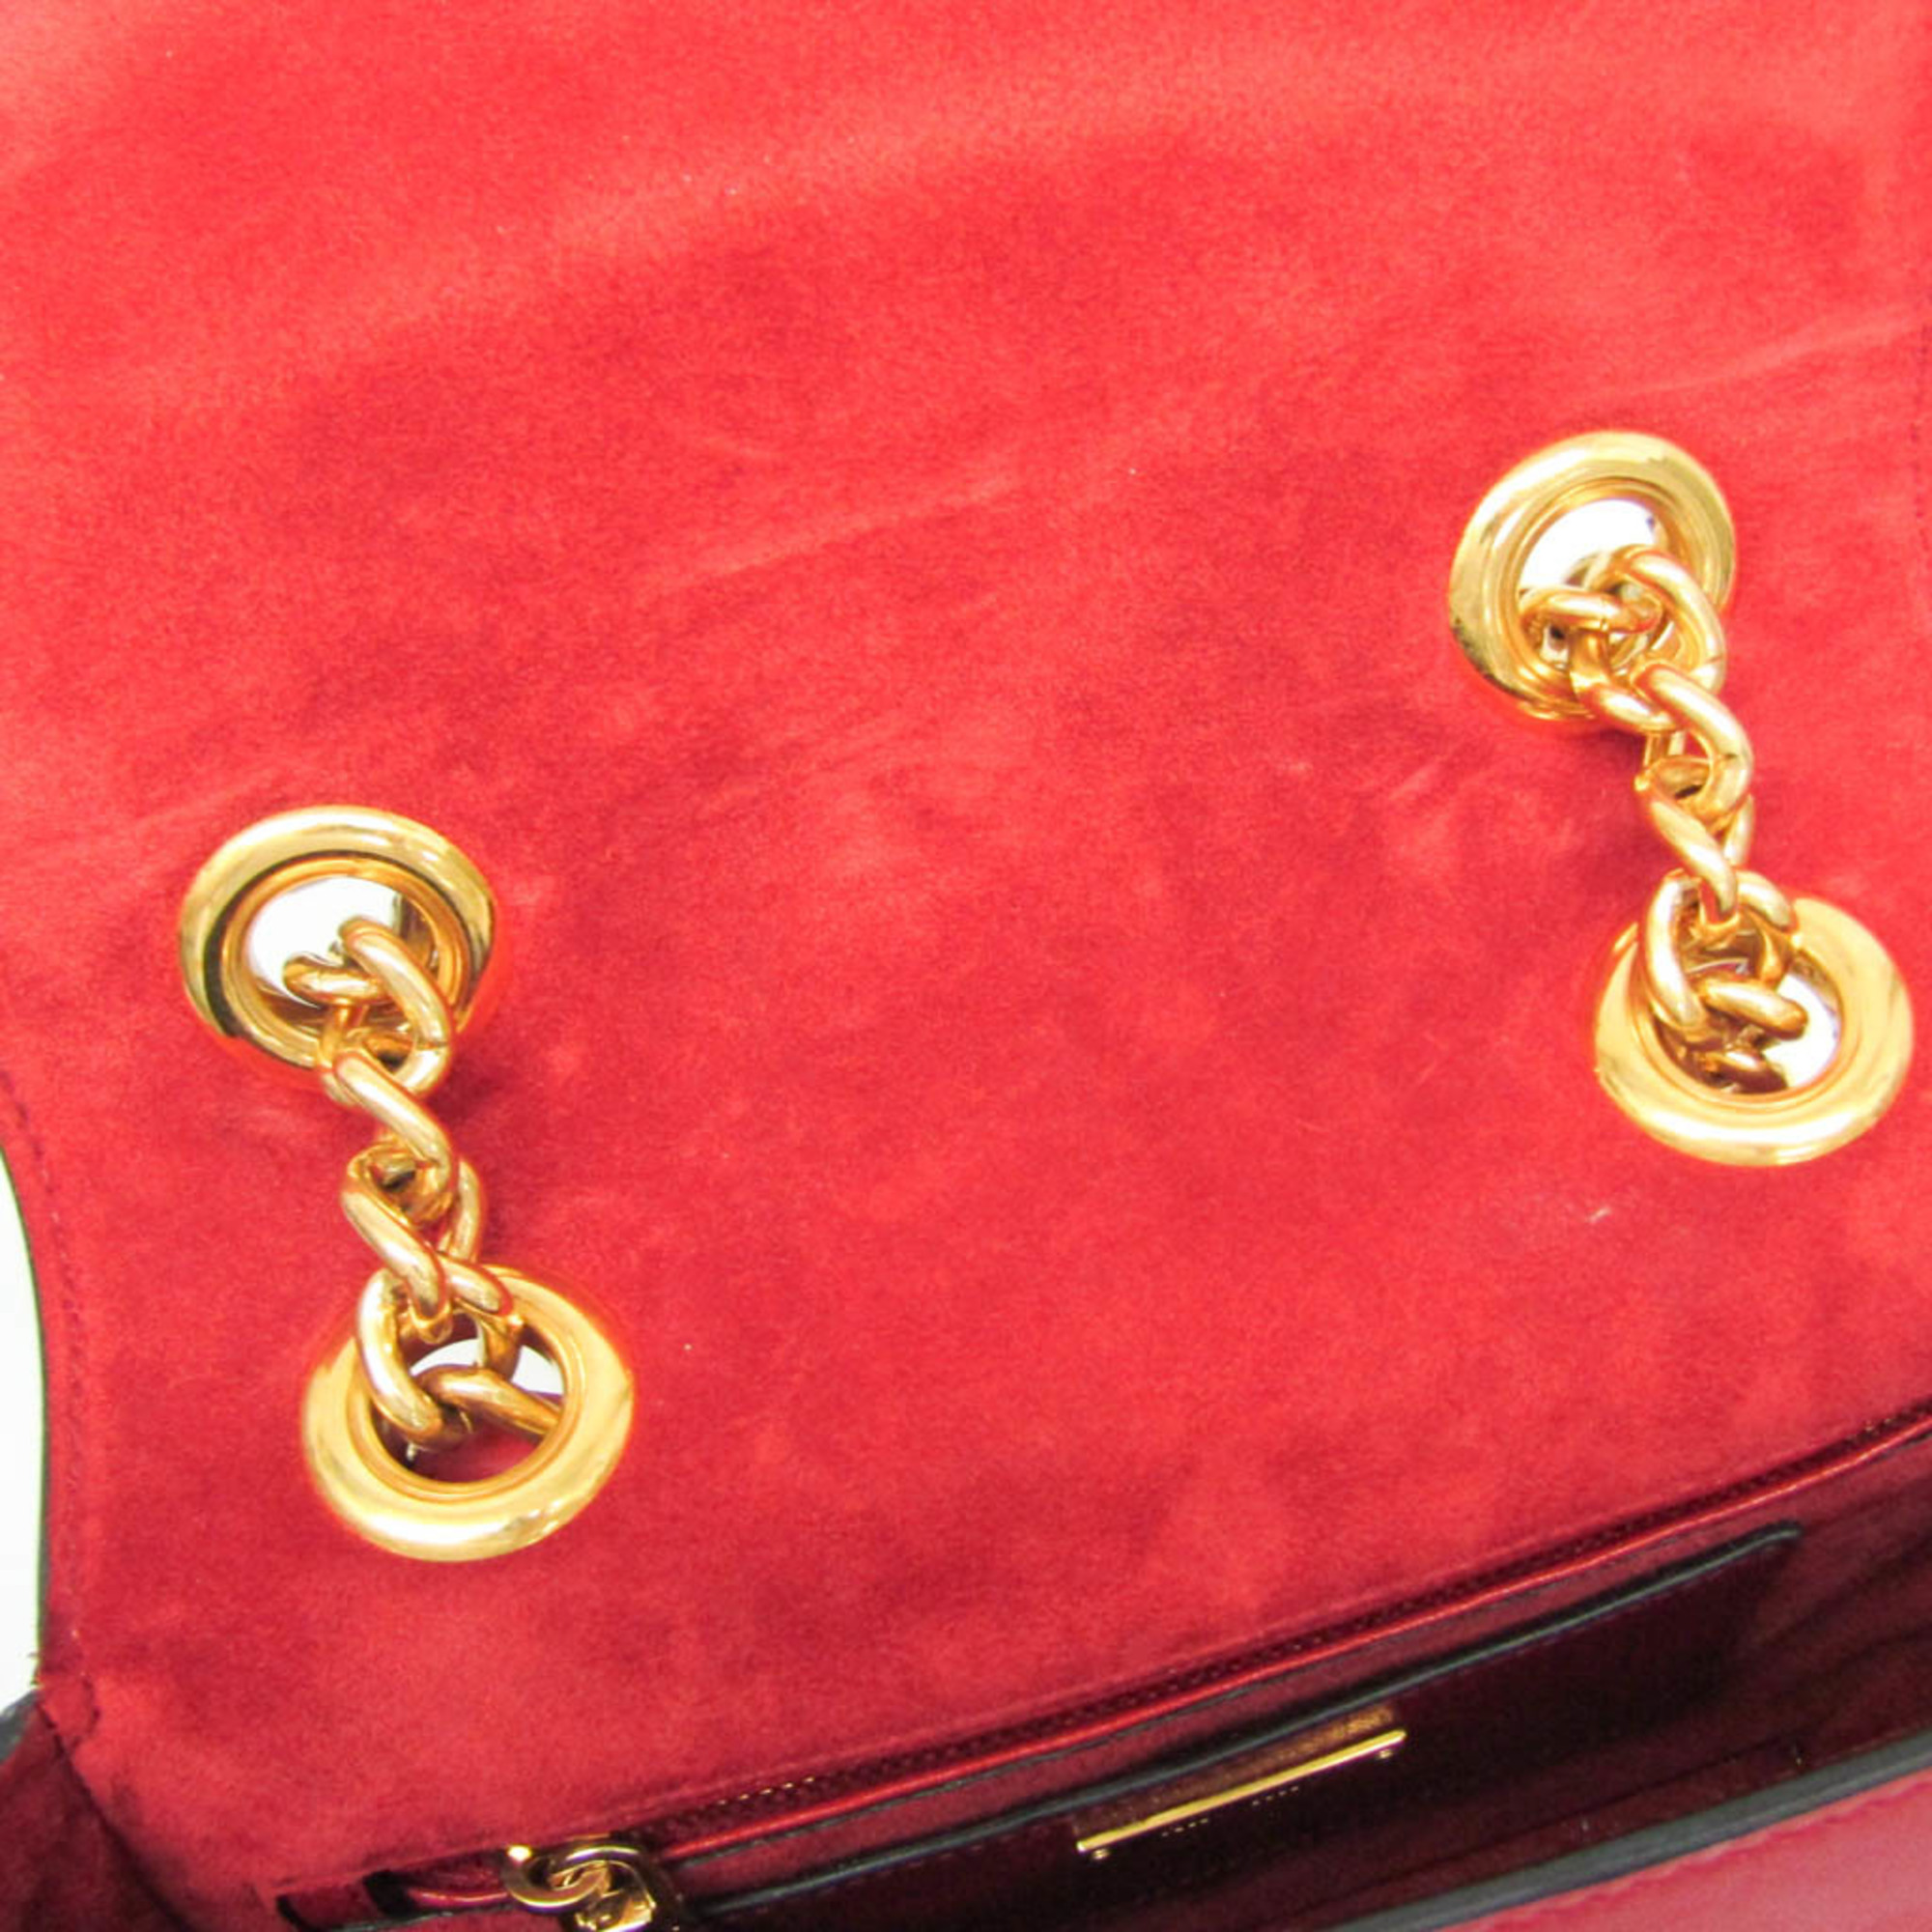 Miu Miu Dahlia 5BD020 Women's Leather Shoulder Bag Red Color